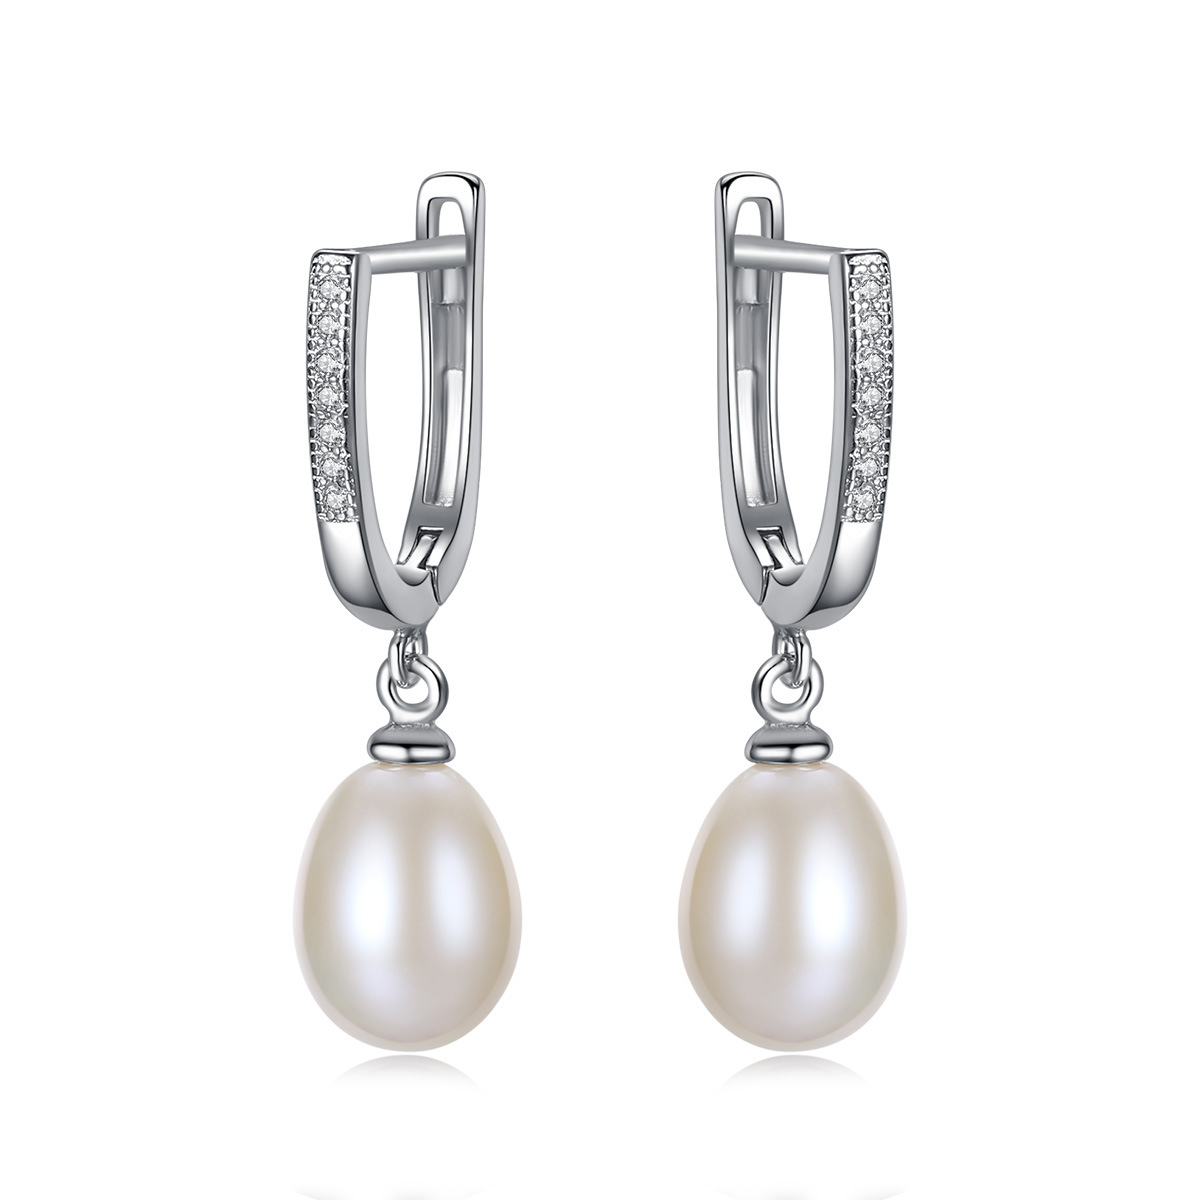 3a Cz 8-9Mm Freshwater Pearl Sterling Silver Earrings